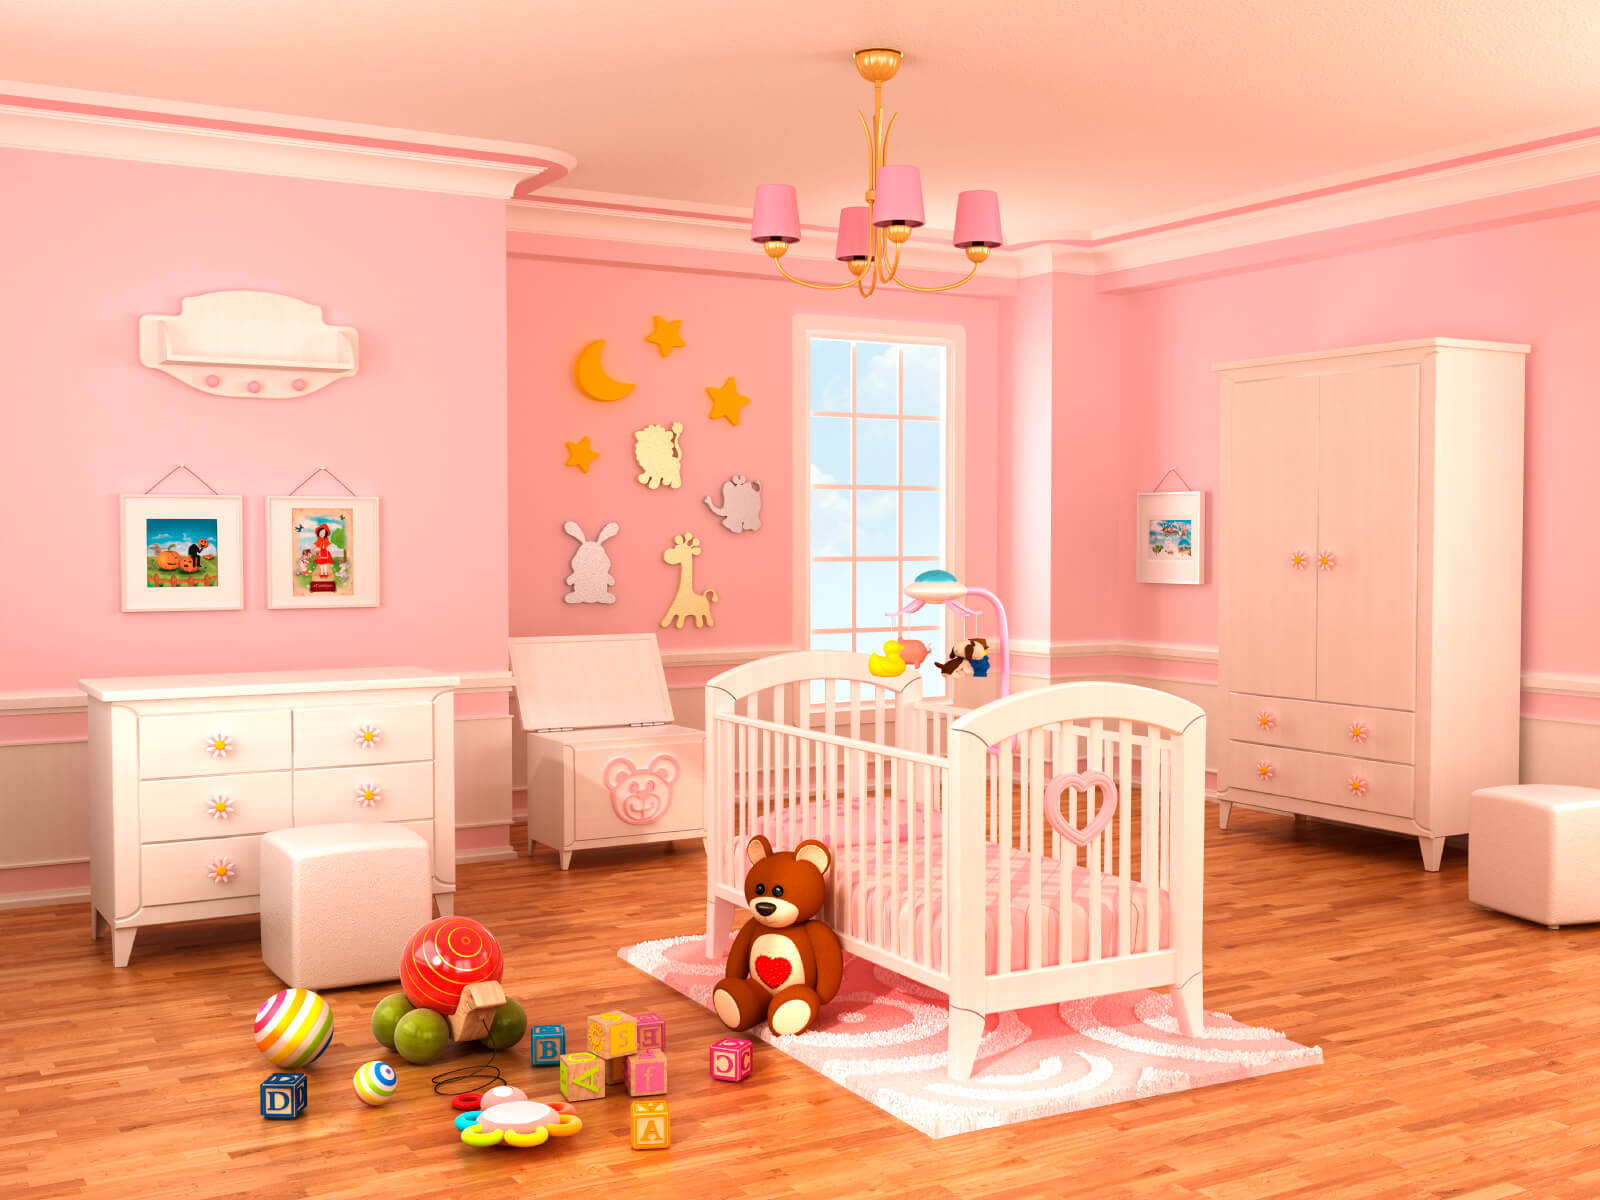 Baby Girl Nursery Wall Decor Ideas
 18 Baby Girl Nursery Ideas Themes & Designs